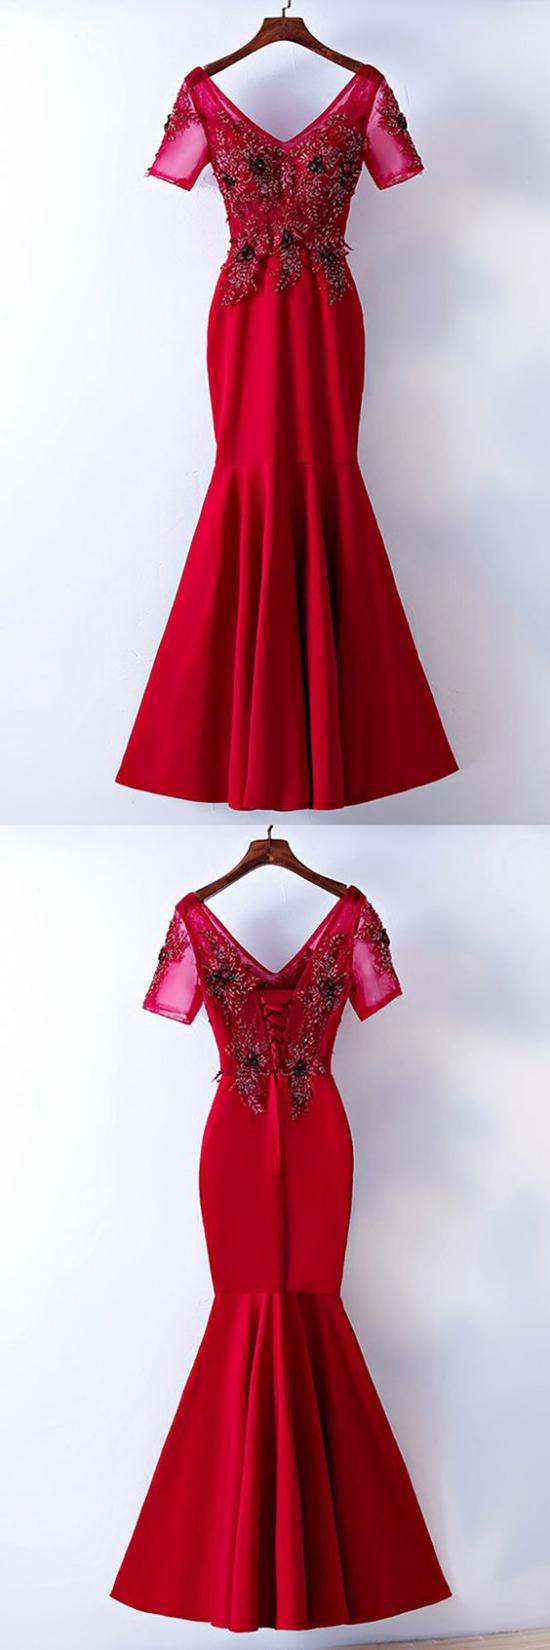 لباس شب قرمز جدید,مدل لباس شب قرمز 2019,مدل لباس شب قرمز 2018